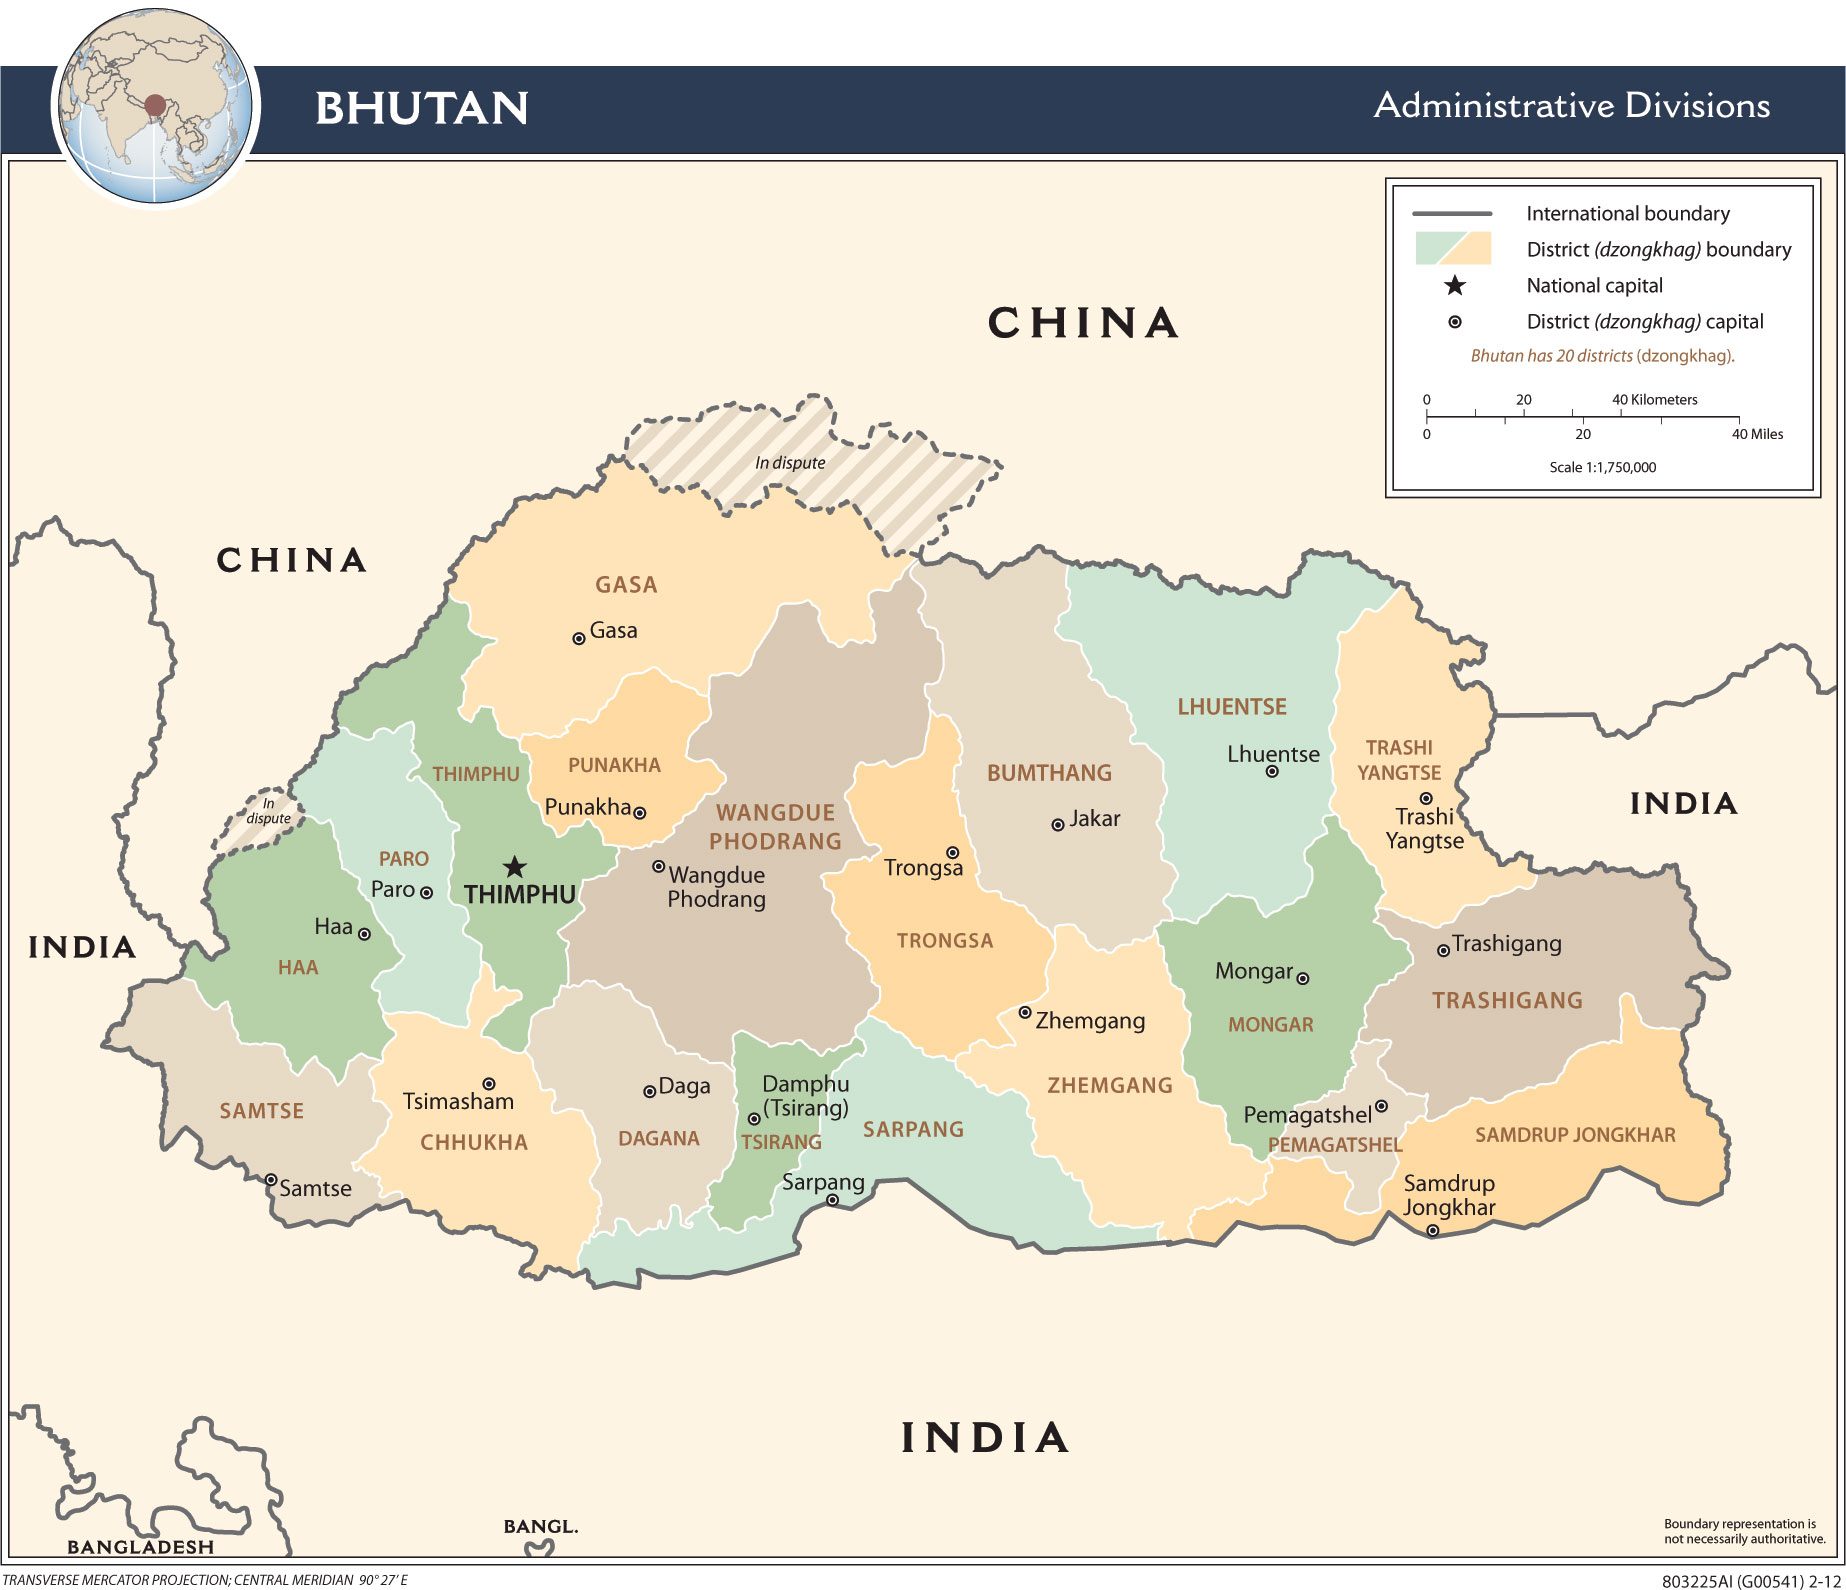 [Update] Bản đồ hành chính đất nước Bhutan (Bhutan Map) phóng to năm 2022 32